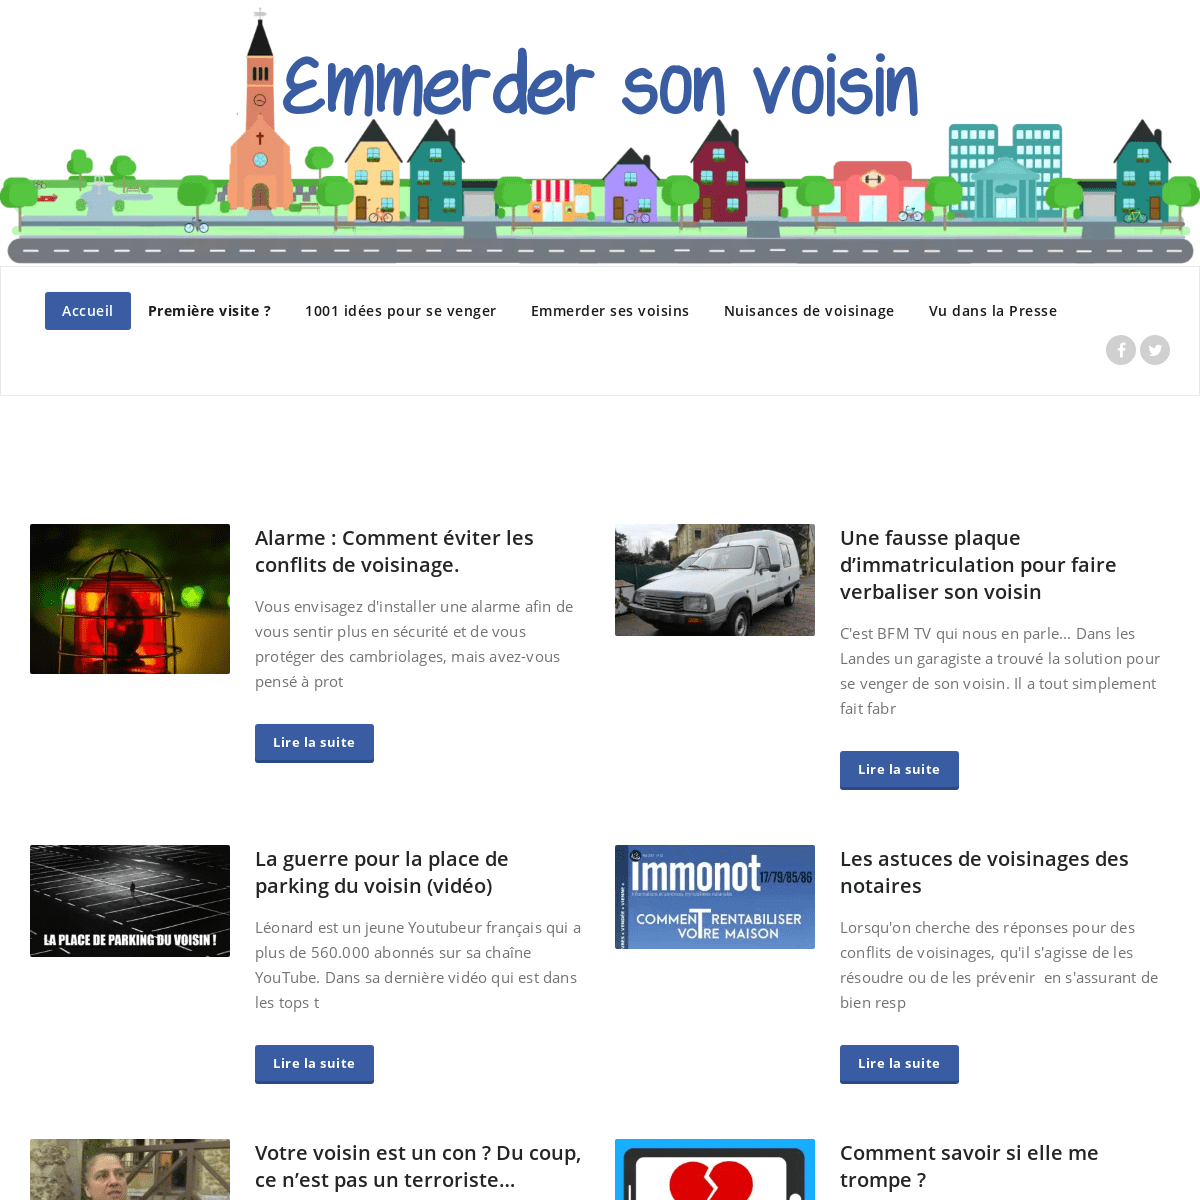 A complete backup of emmerder-son-voisin.com